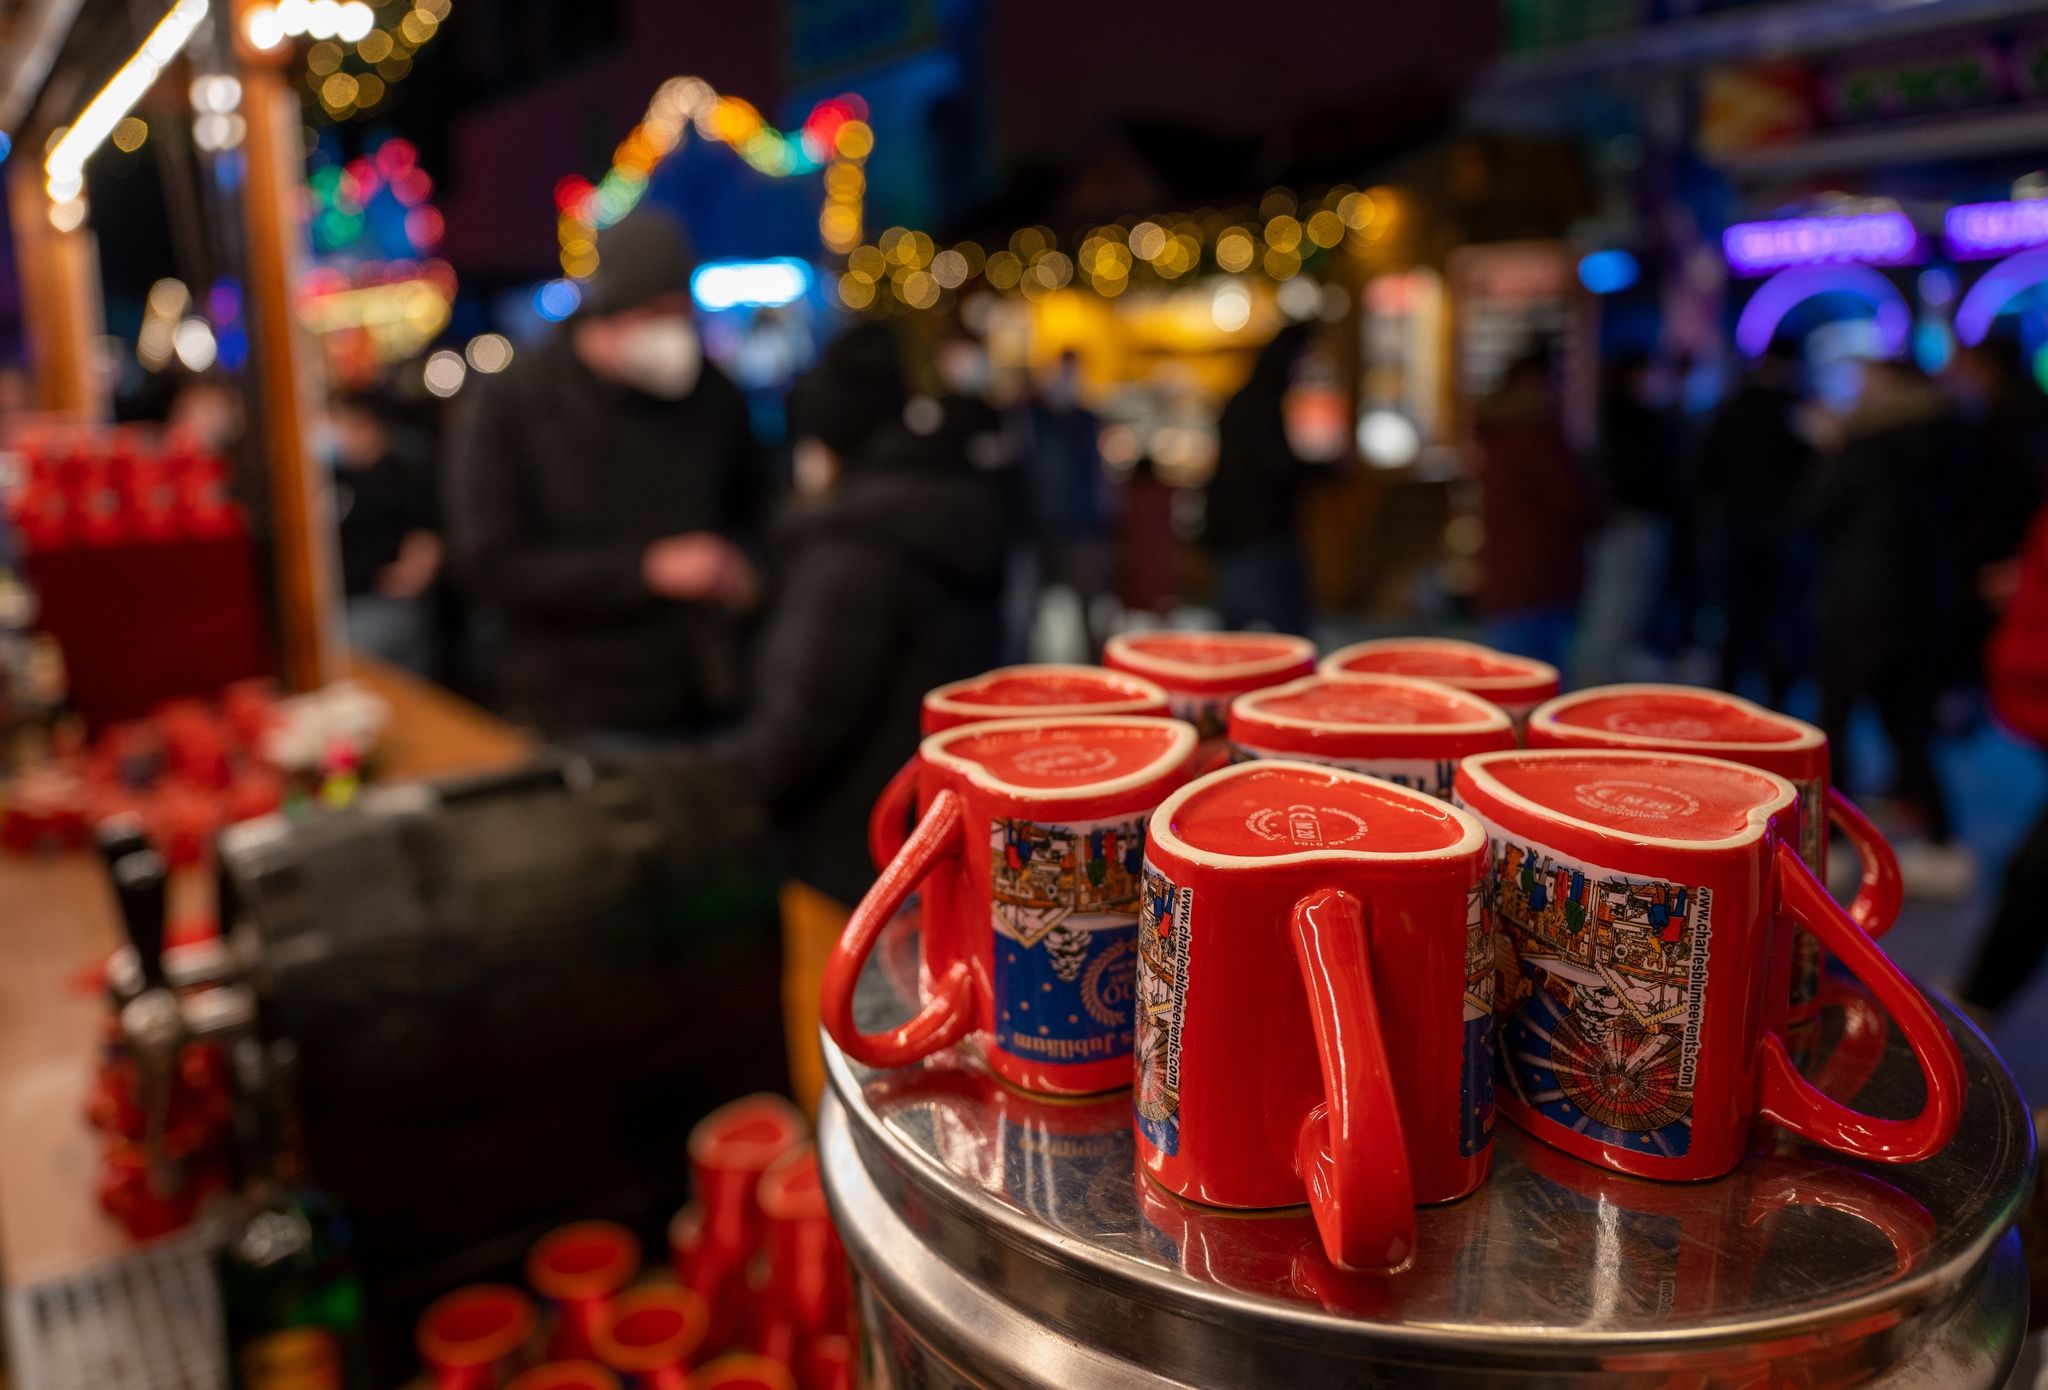 Glühweintassen stehen auf einem Weihnachtsmarkt vor einem Stand auf einem Tisch.